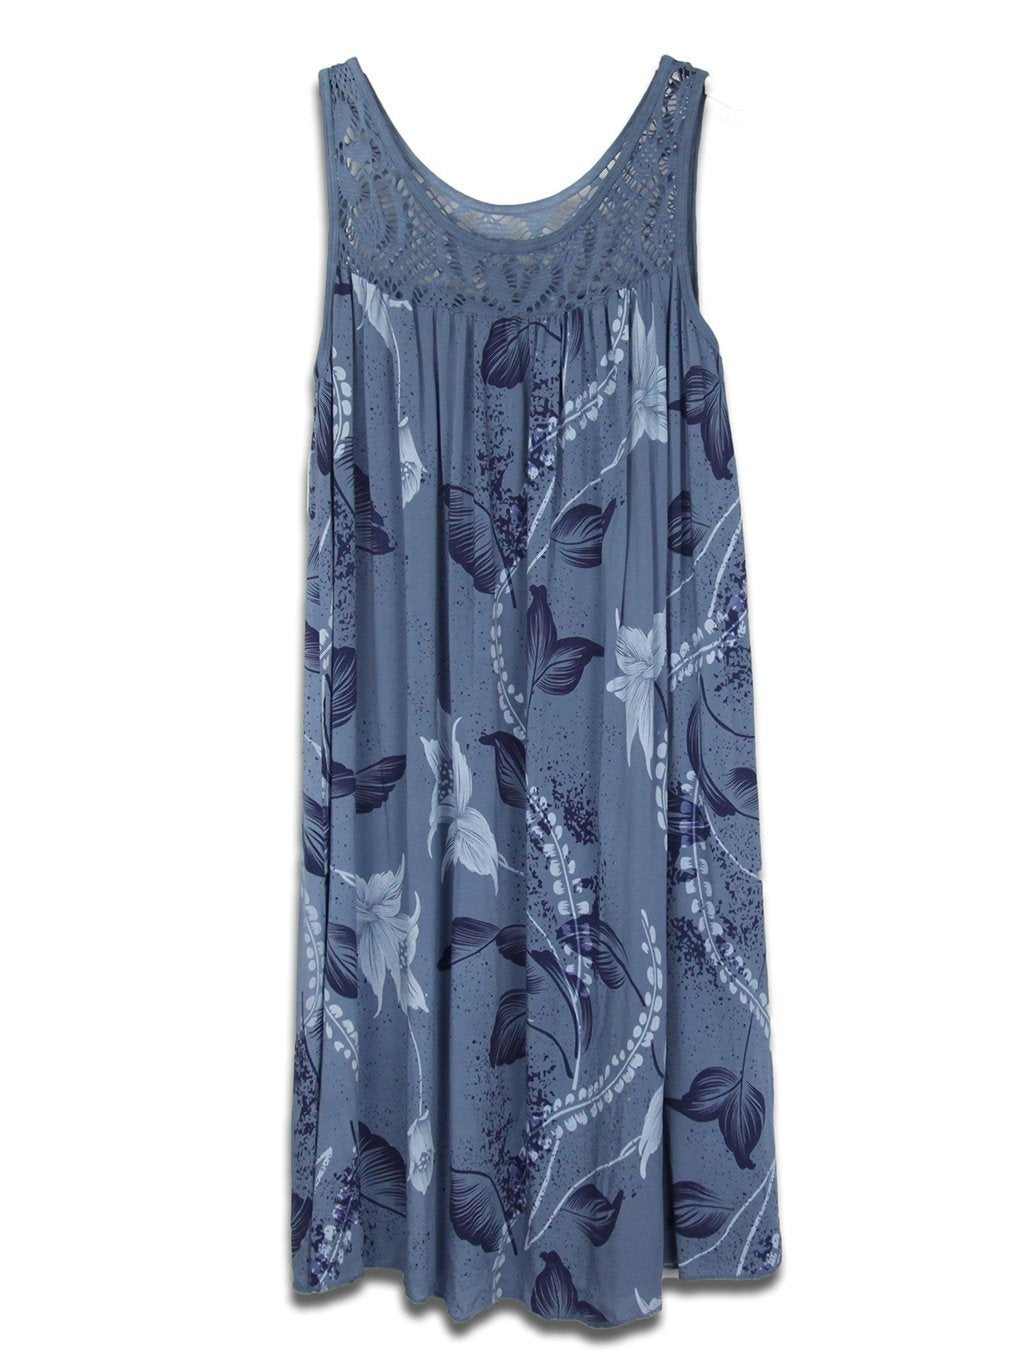 Women's Lace Stitching Cotton Blend Printing Sleeveless Swing Dress